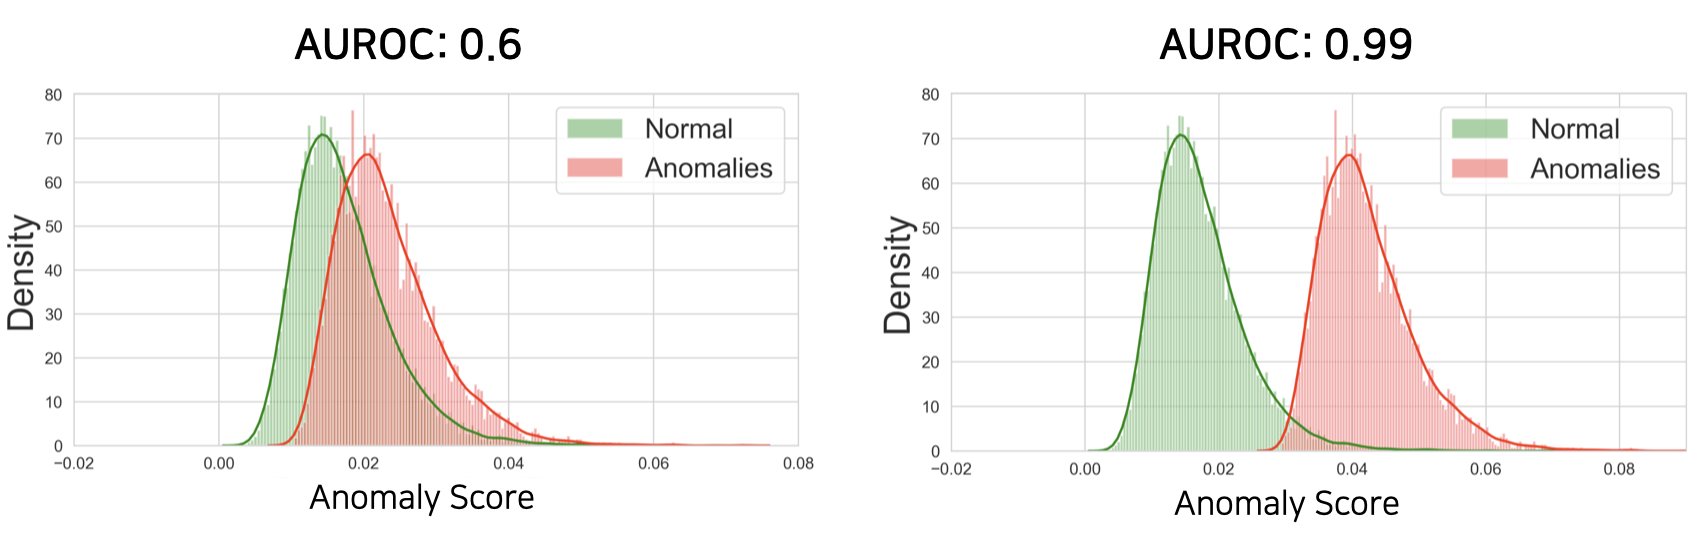 정상 데이터의 anomaly score 분포와 비정상 데이터의 anomaly score 분포